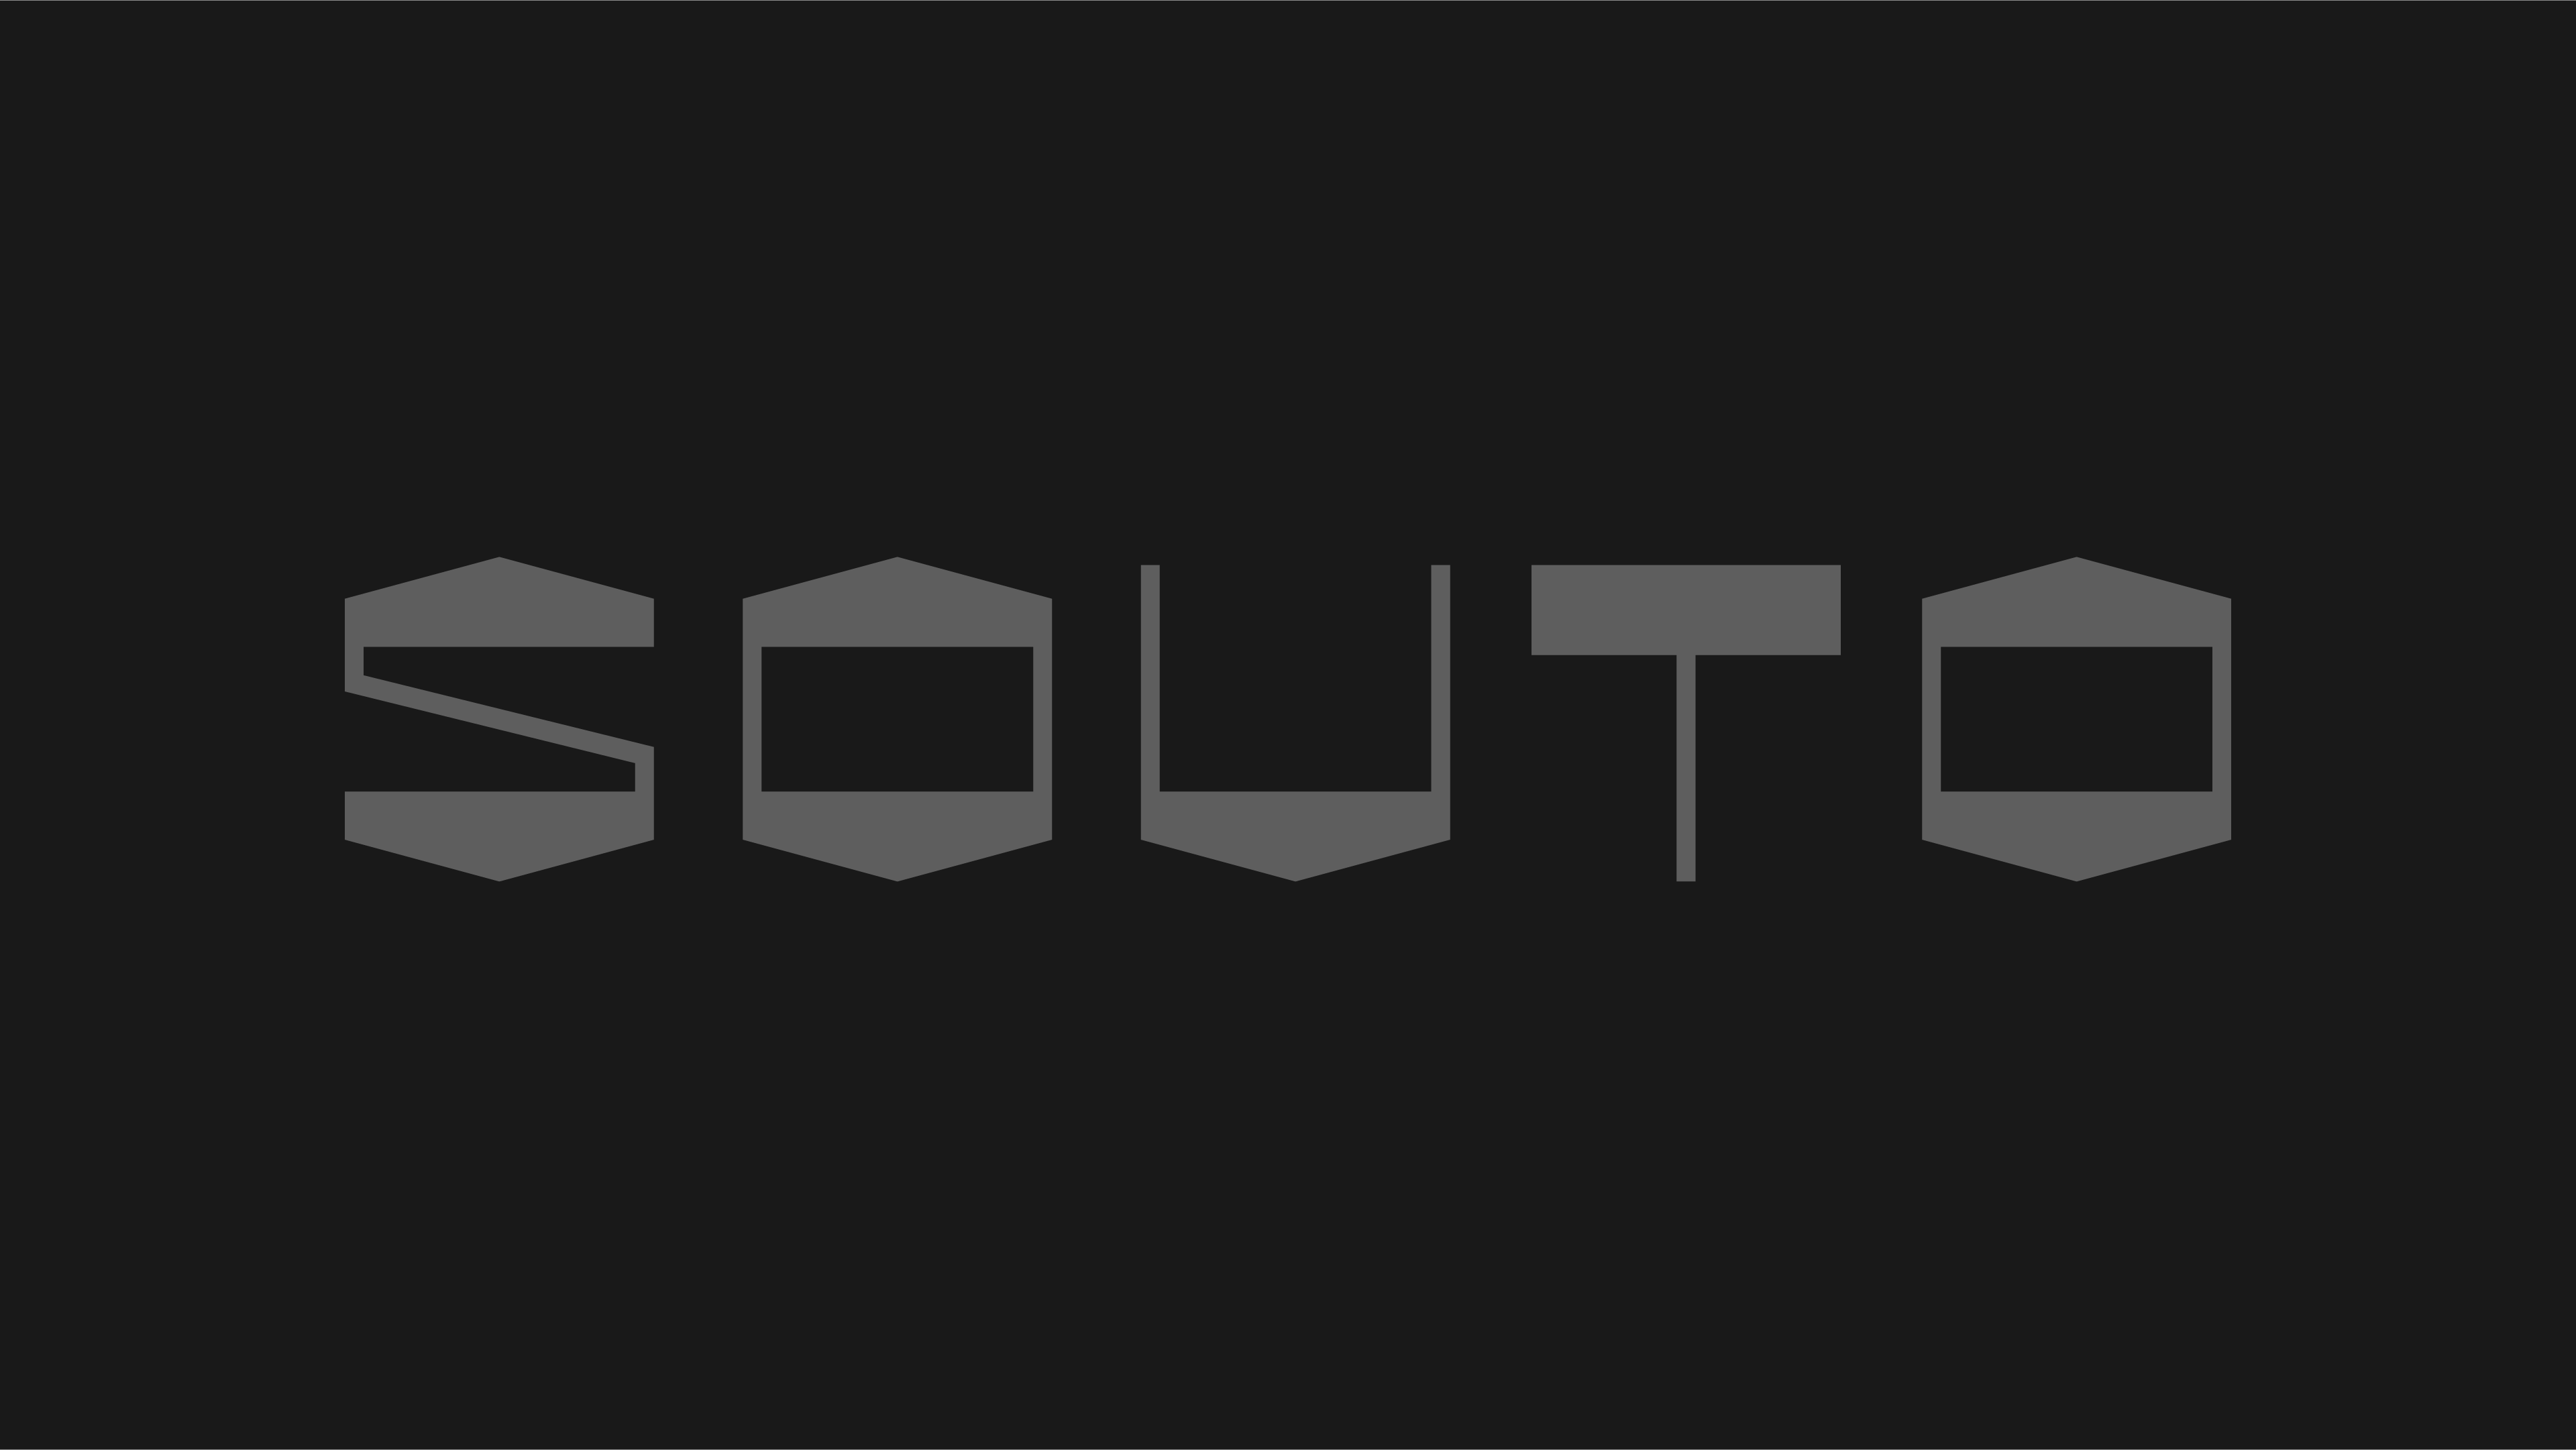 Souto - The Codeine Design